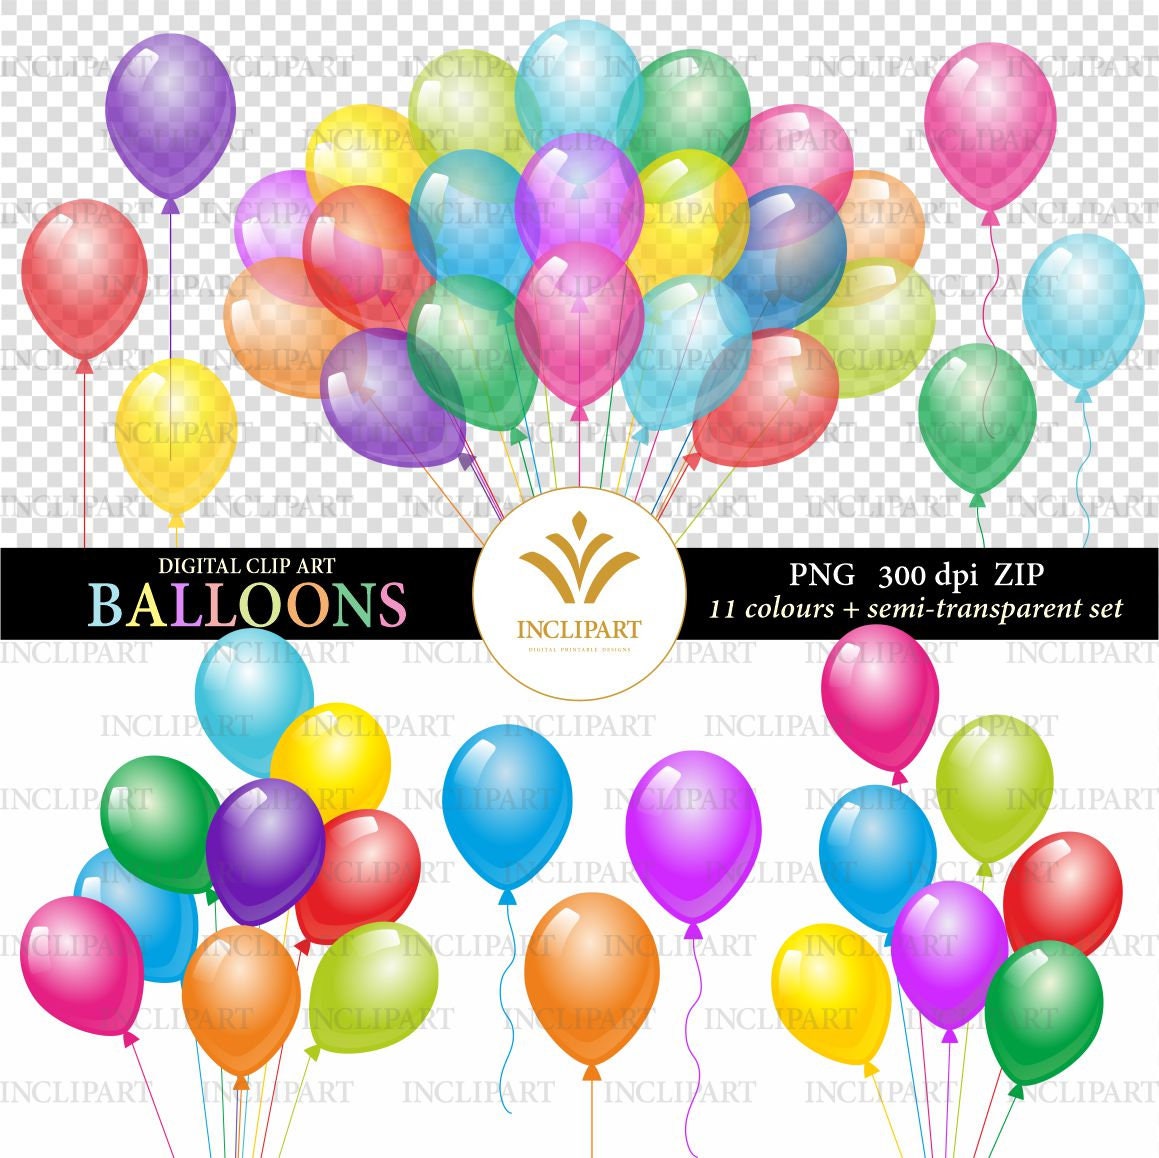 Happy Birthday Rainbow Party Balloons Streamers Decor Pack Kids Birthday  Party Balloon Decor-diy Balloon Backdrop Decor 